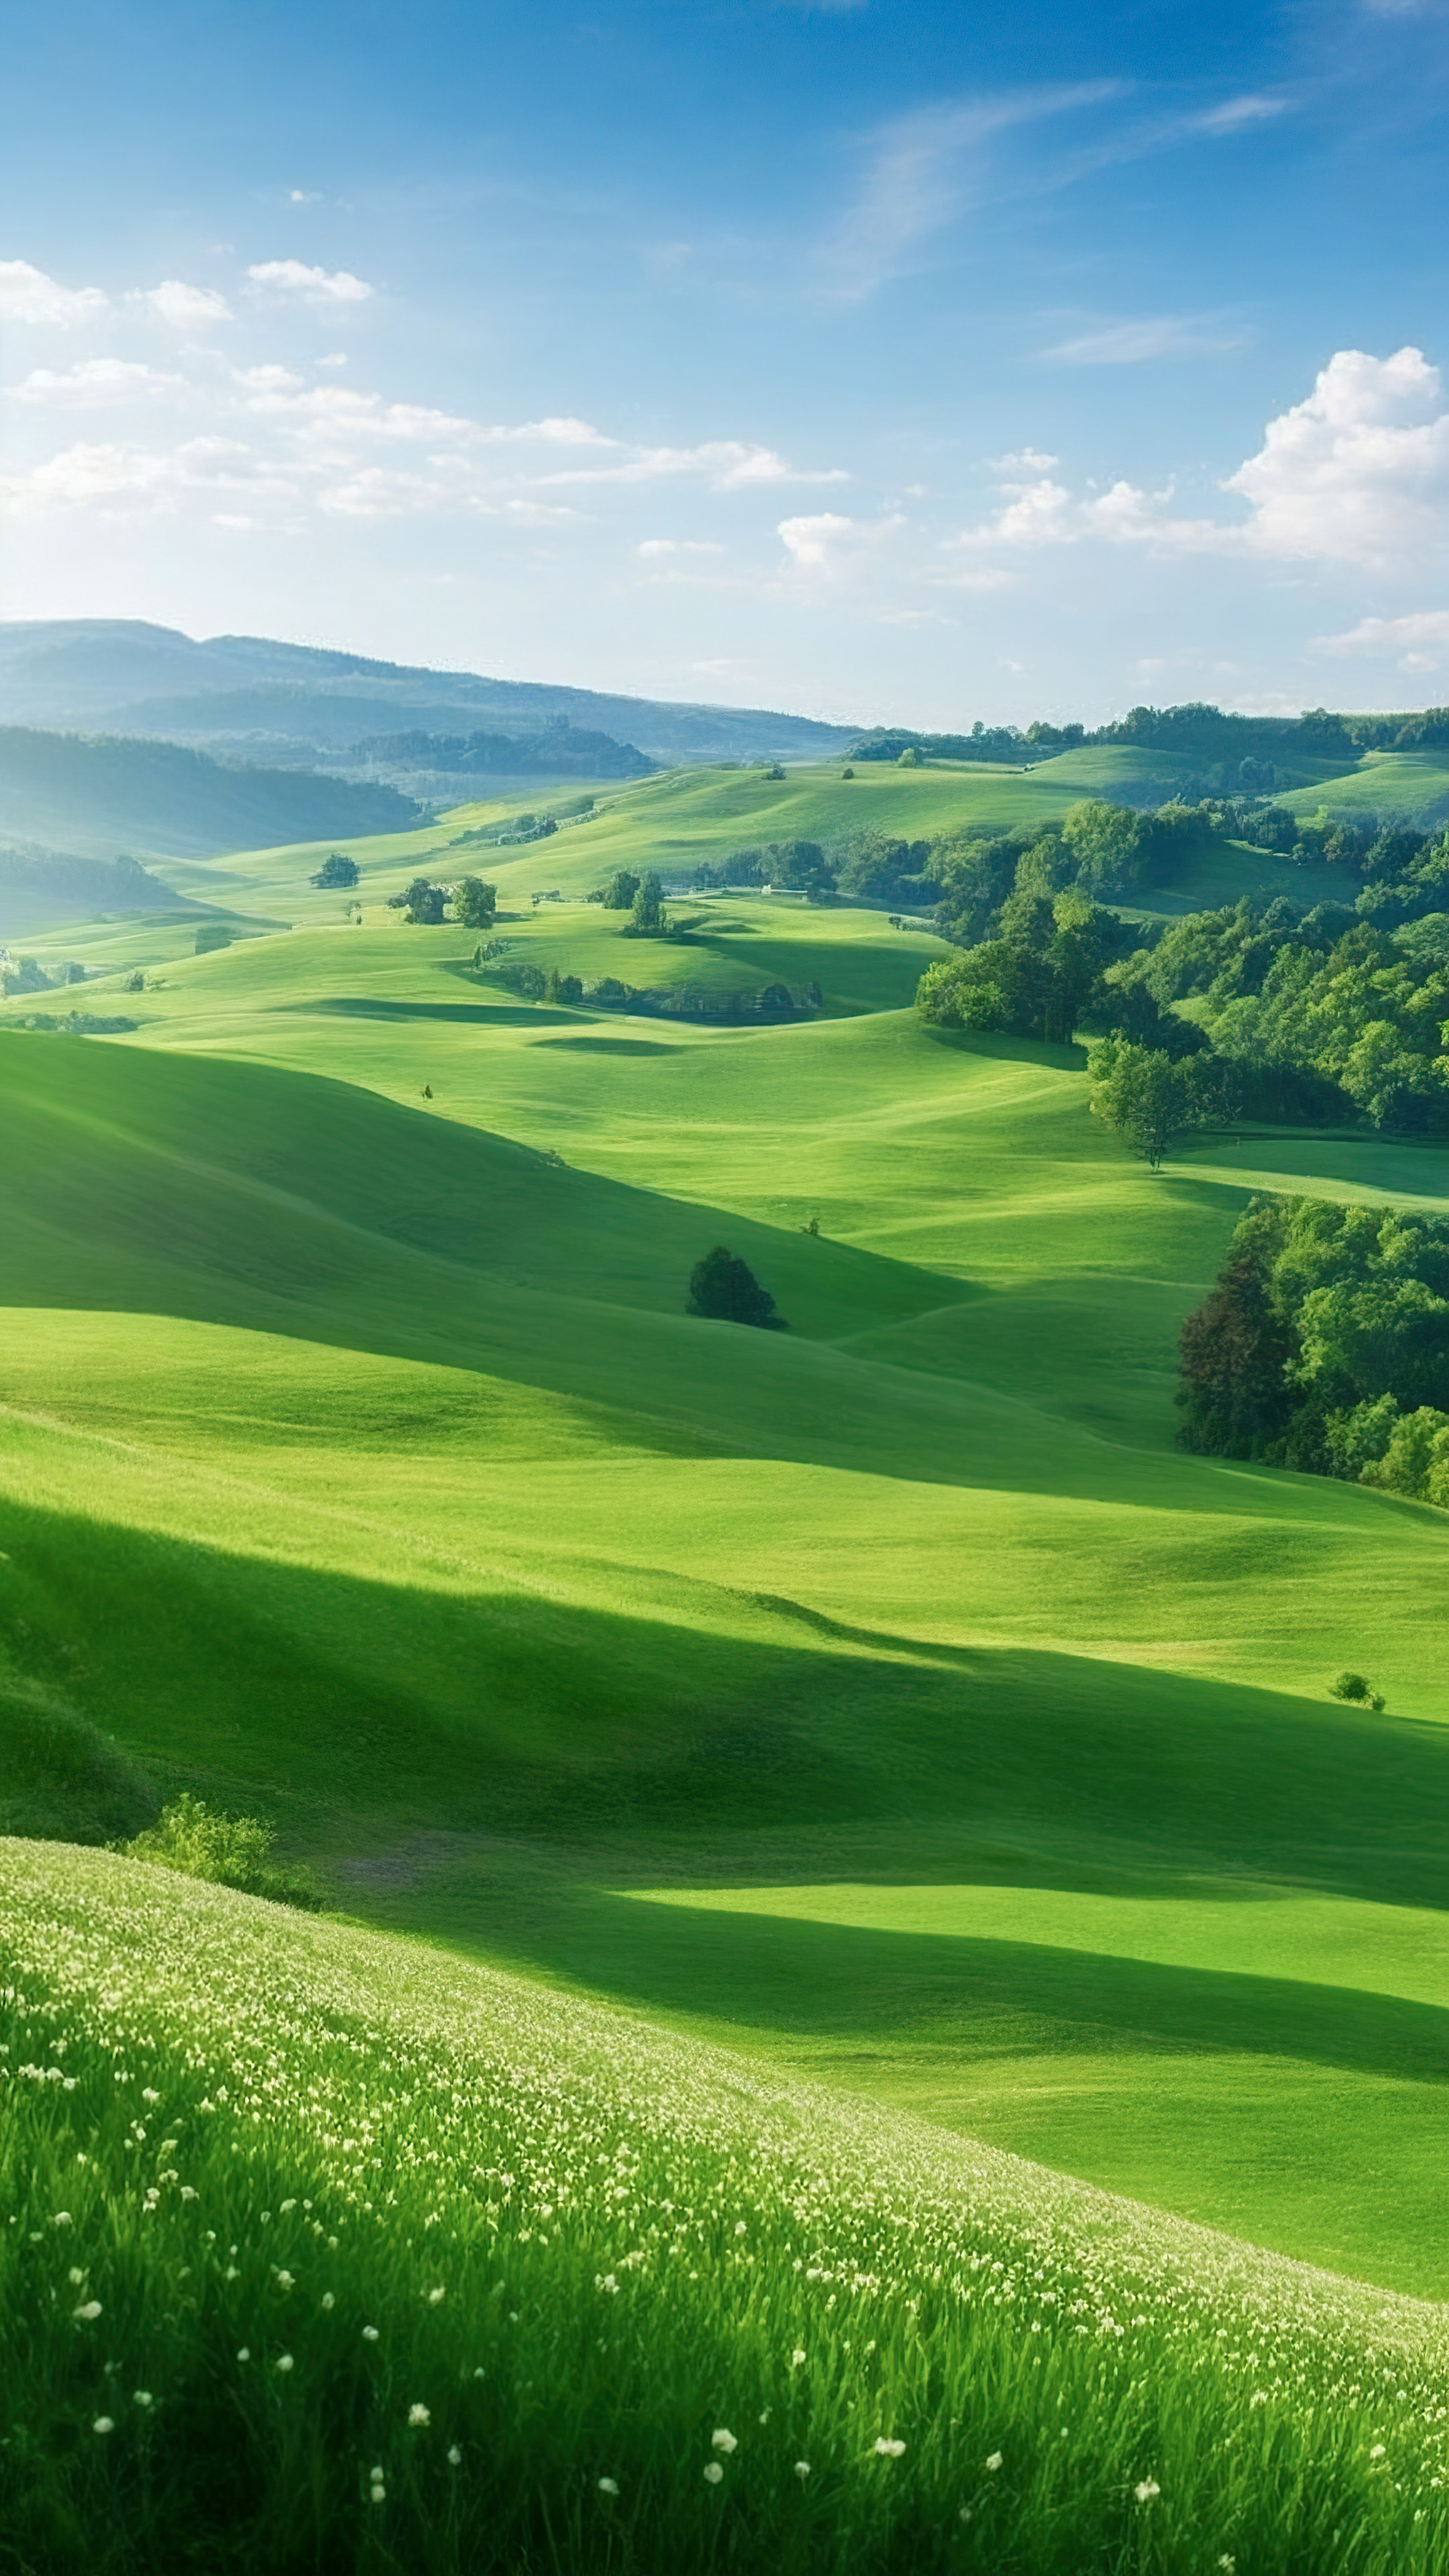 Vivez la tranquillité avec notre joli fond d'écran nature, dépeignant une scène paisible de la campagne avec des collines ondulantes, des pâturages verts et un ciel clair de jour.